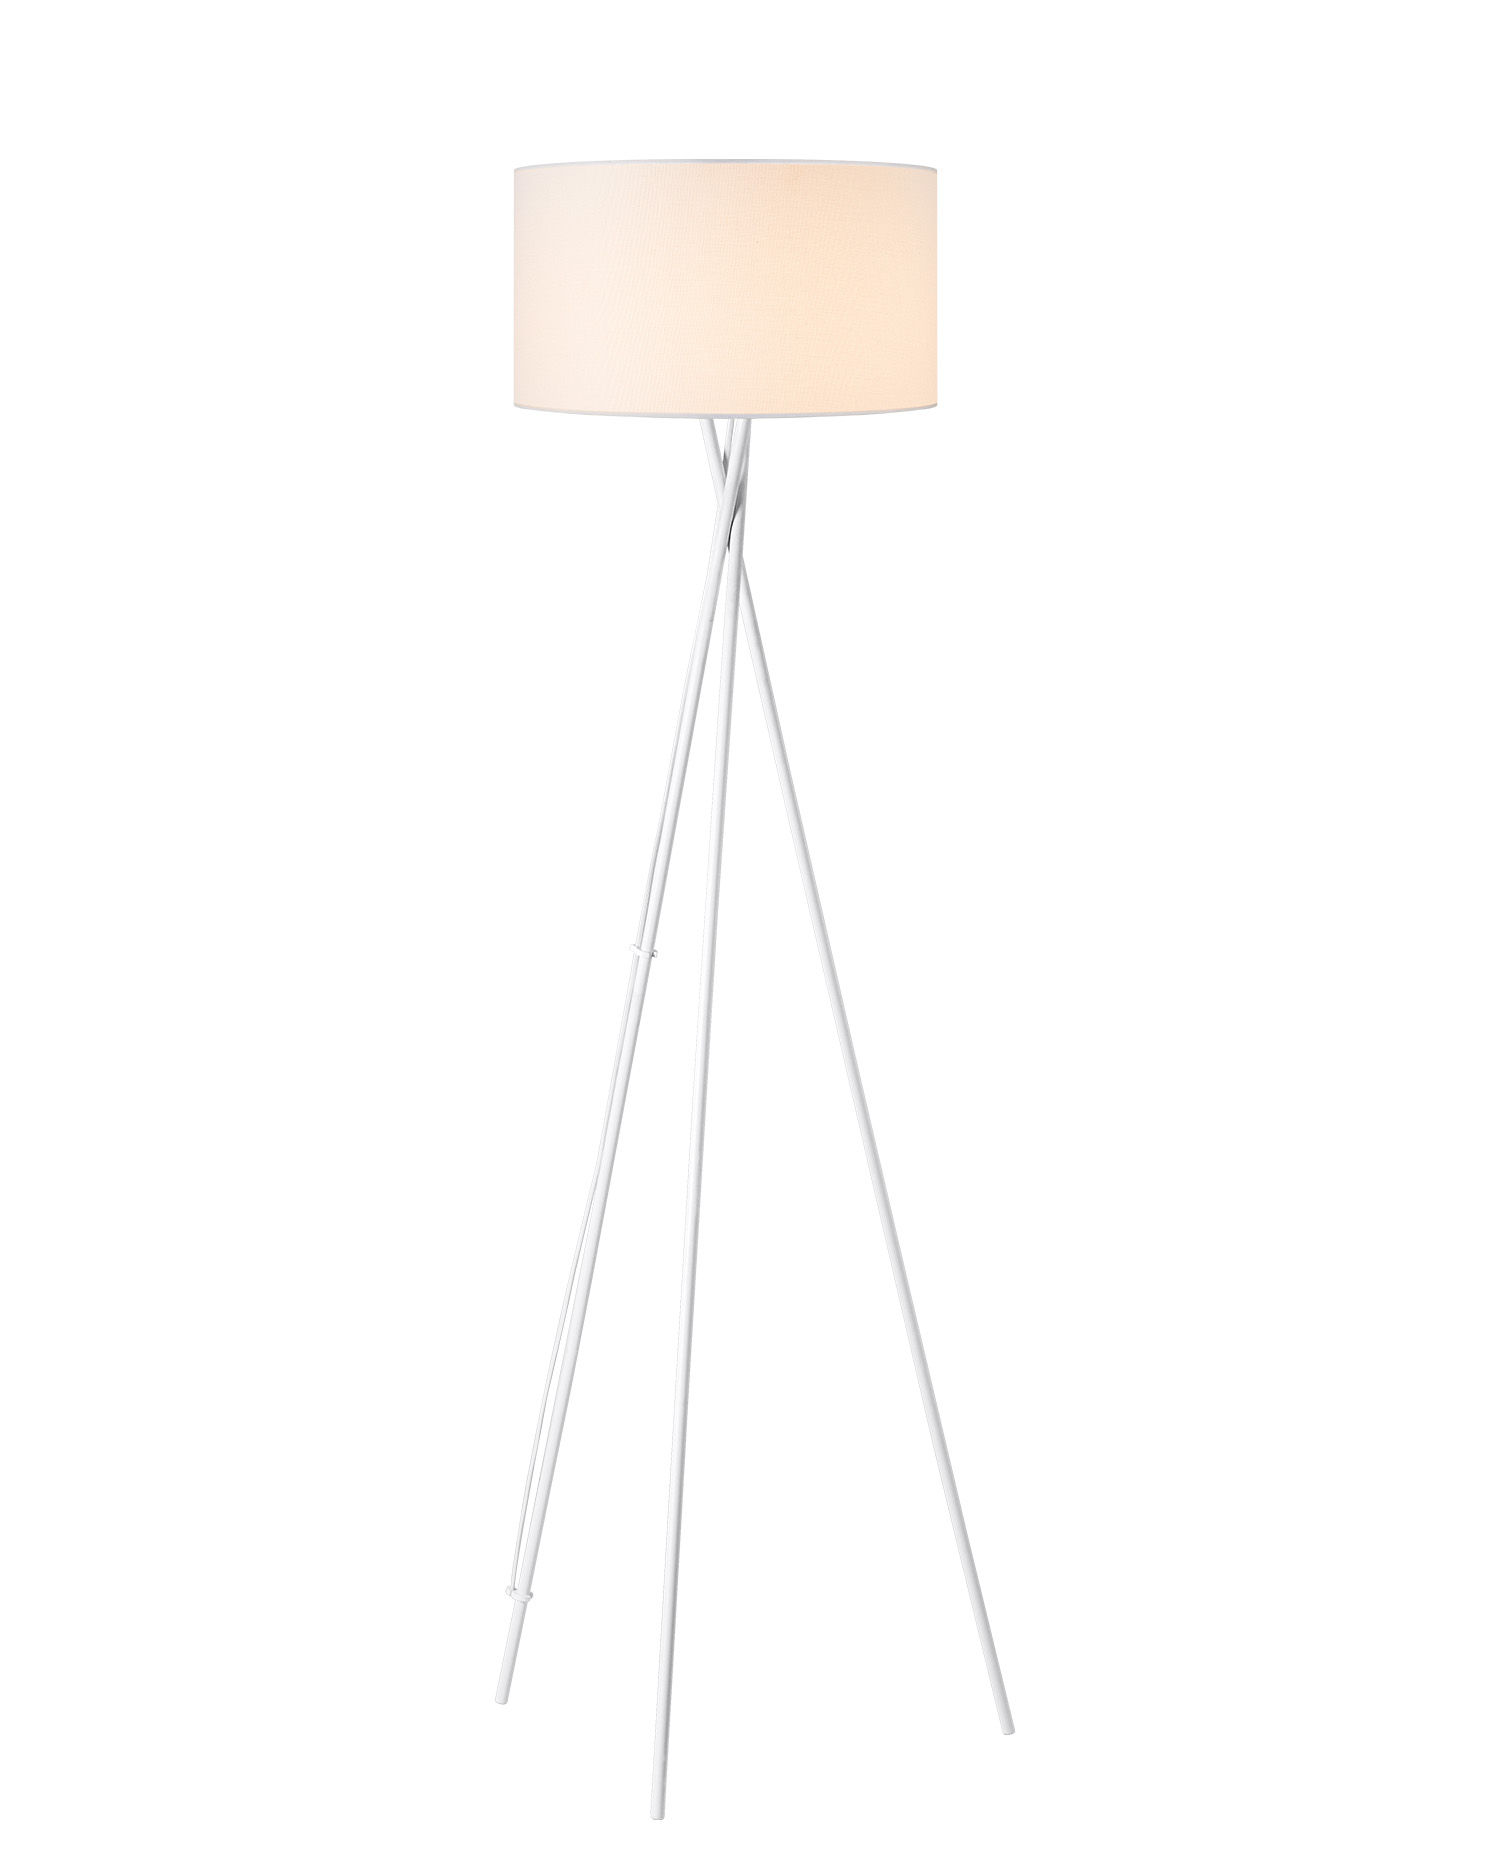 Tangla lighting - TLF7399-01WT - LED Floor lamp 1 Light - metal + linen - white - cross tripod - E27